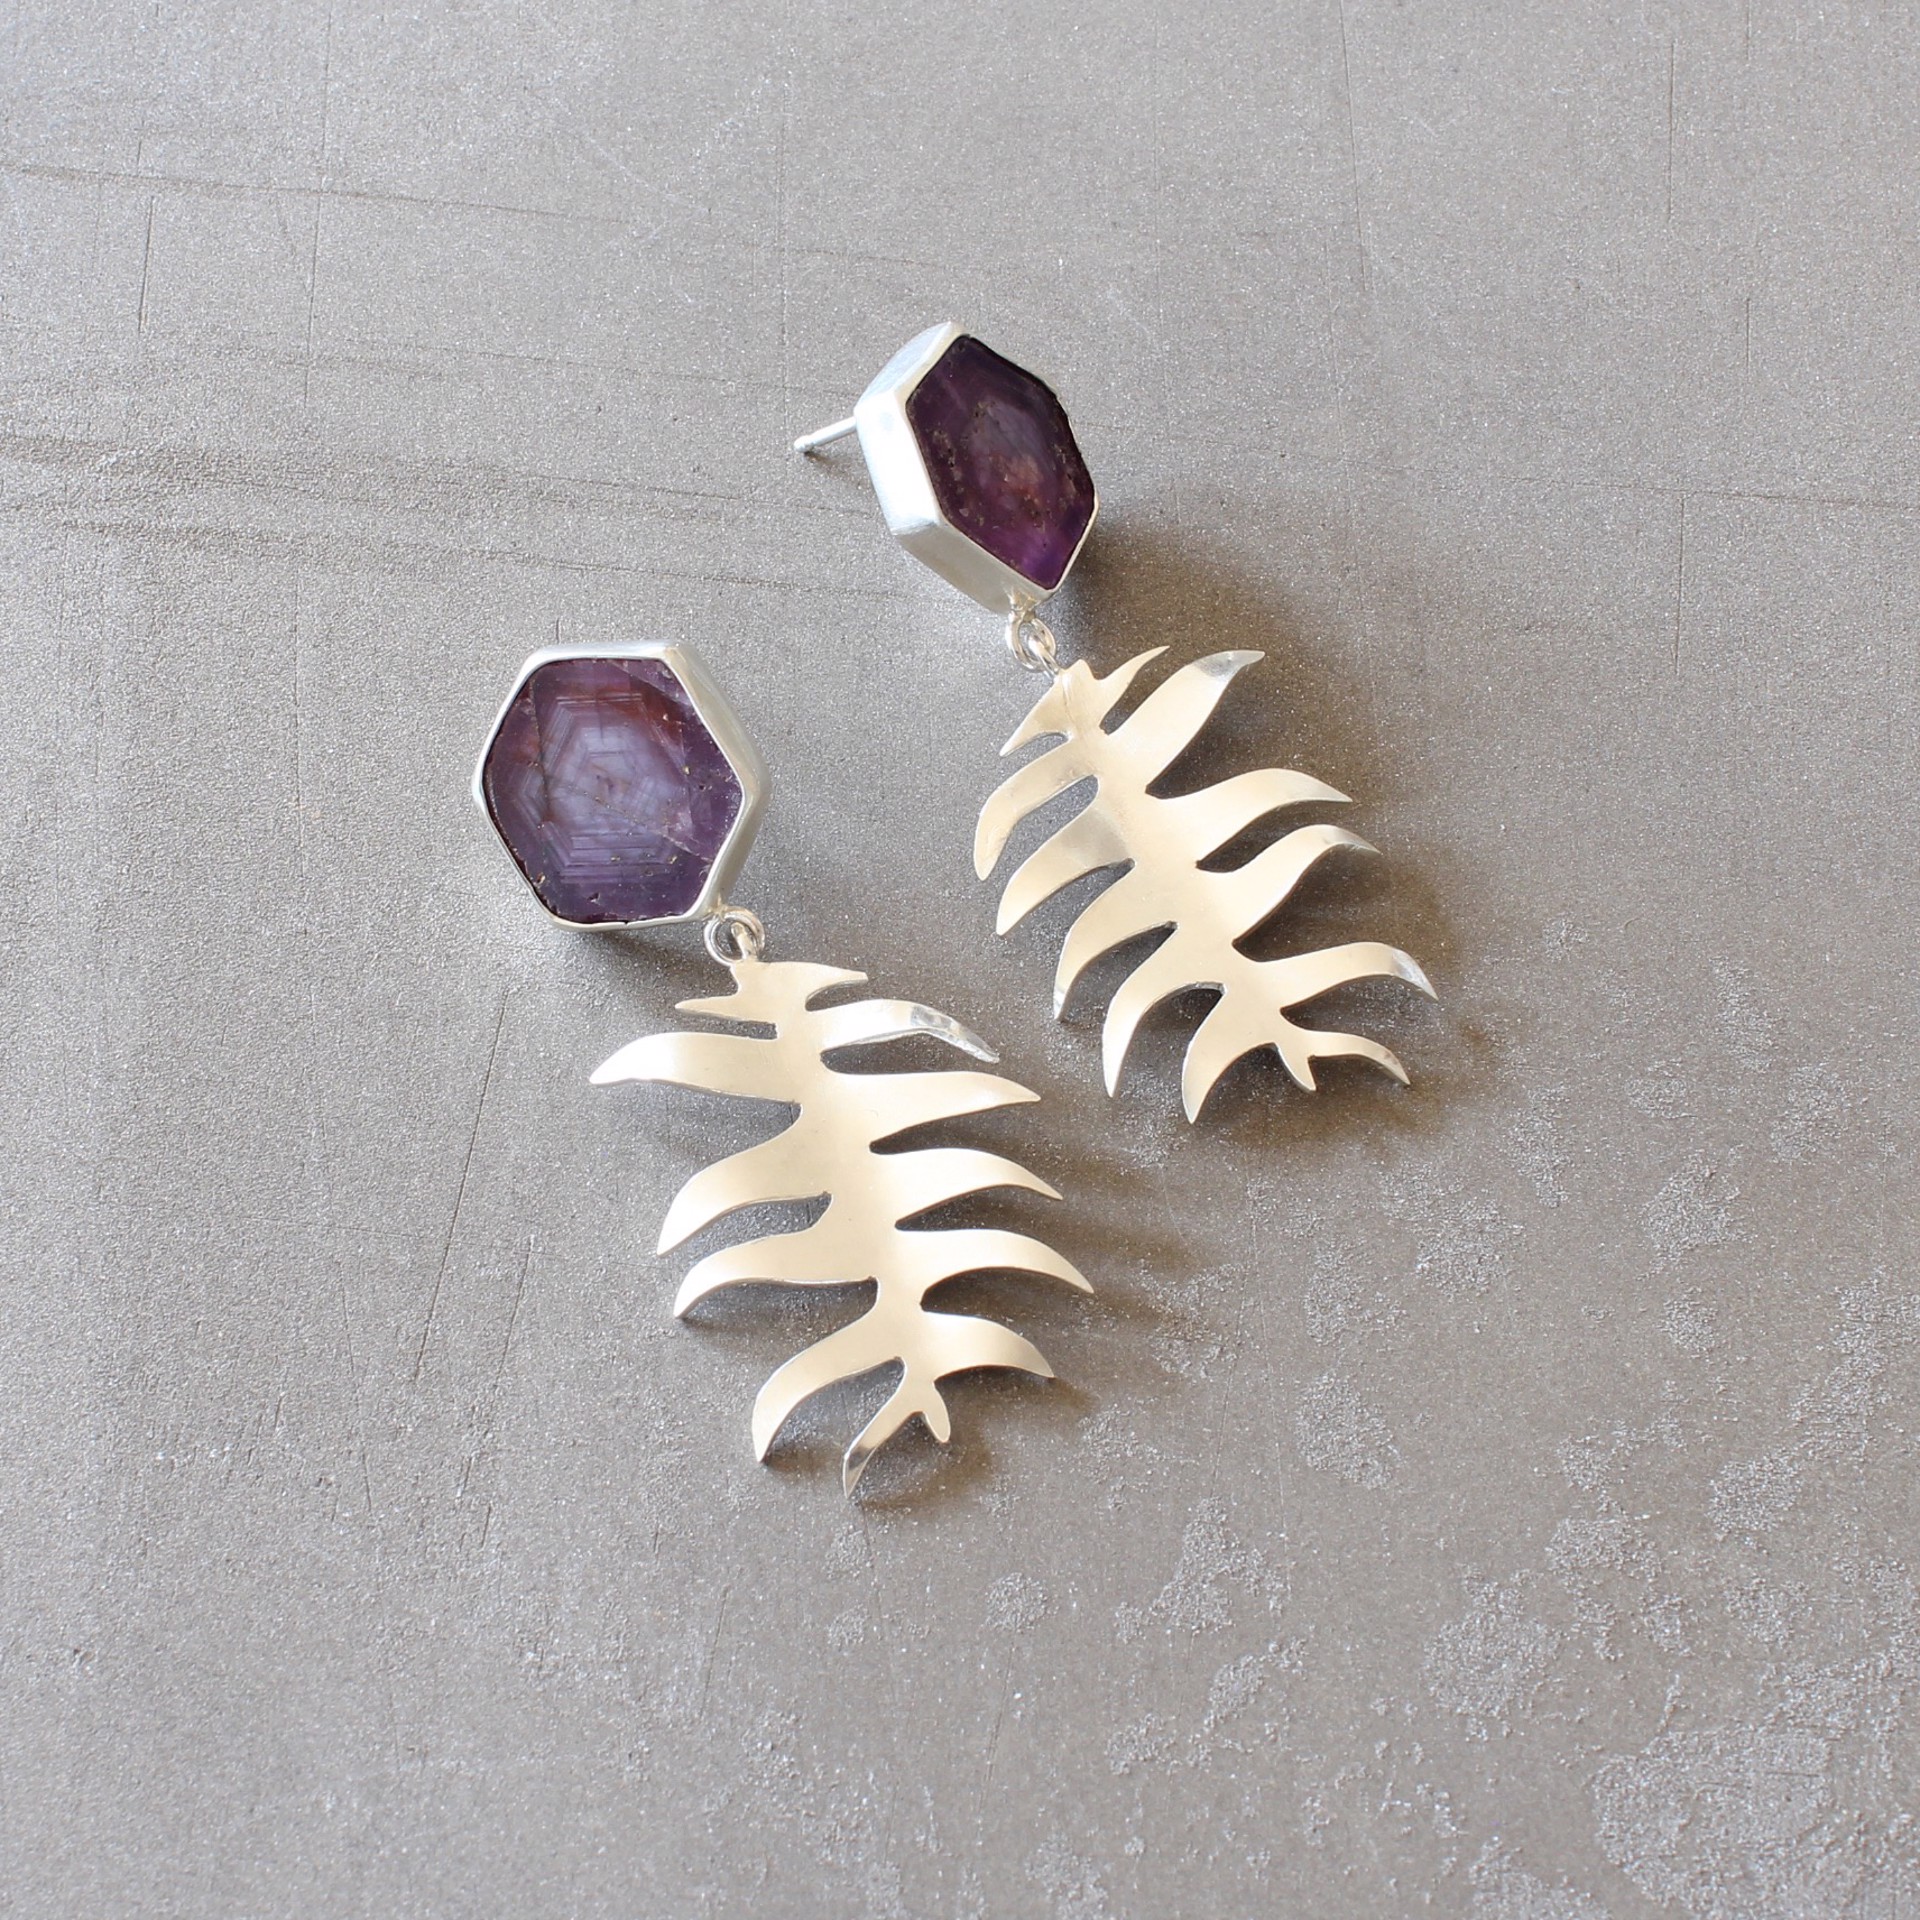 Ruby Slice + Fern Leaf Earrings by Audrey Laine